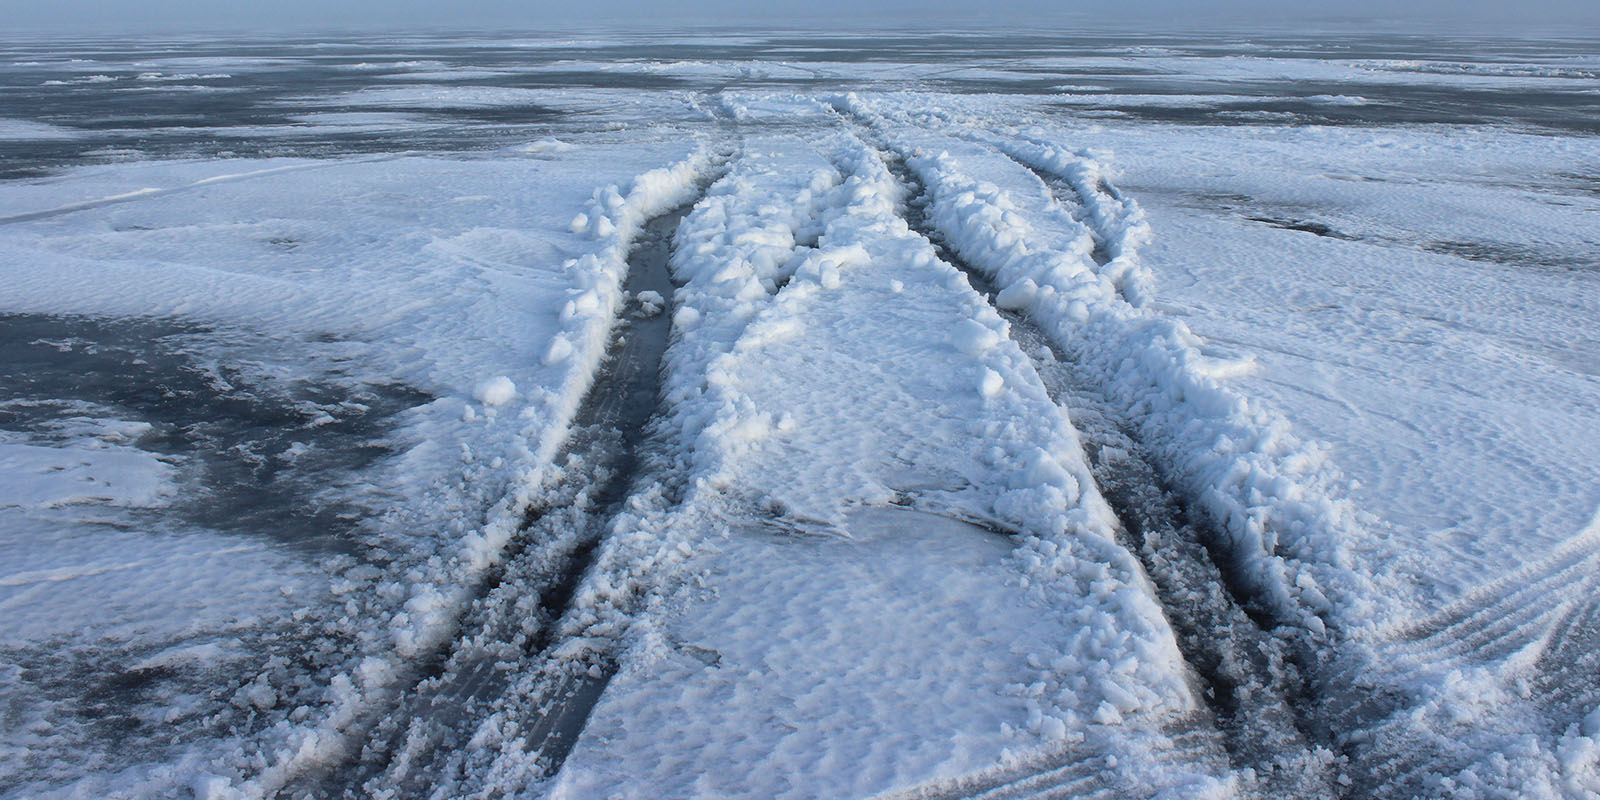 Vehicle tracks on bad ice